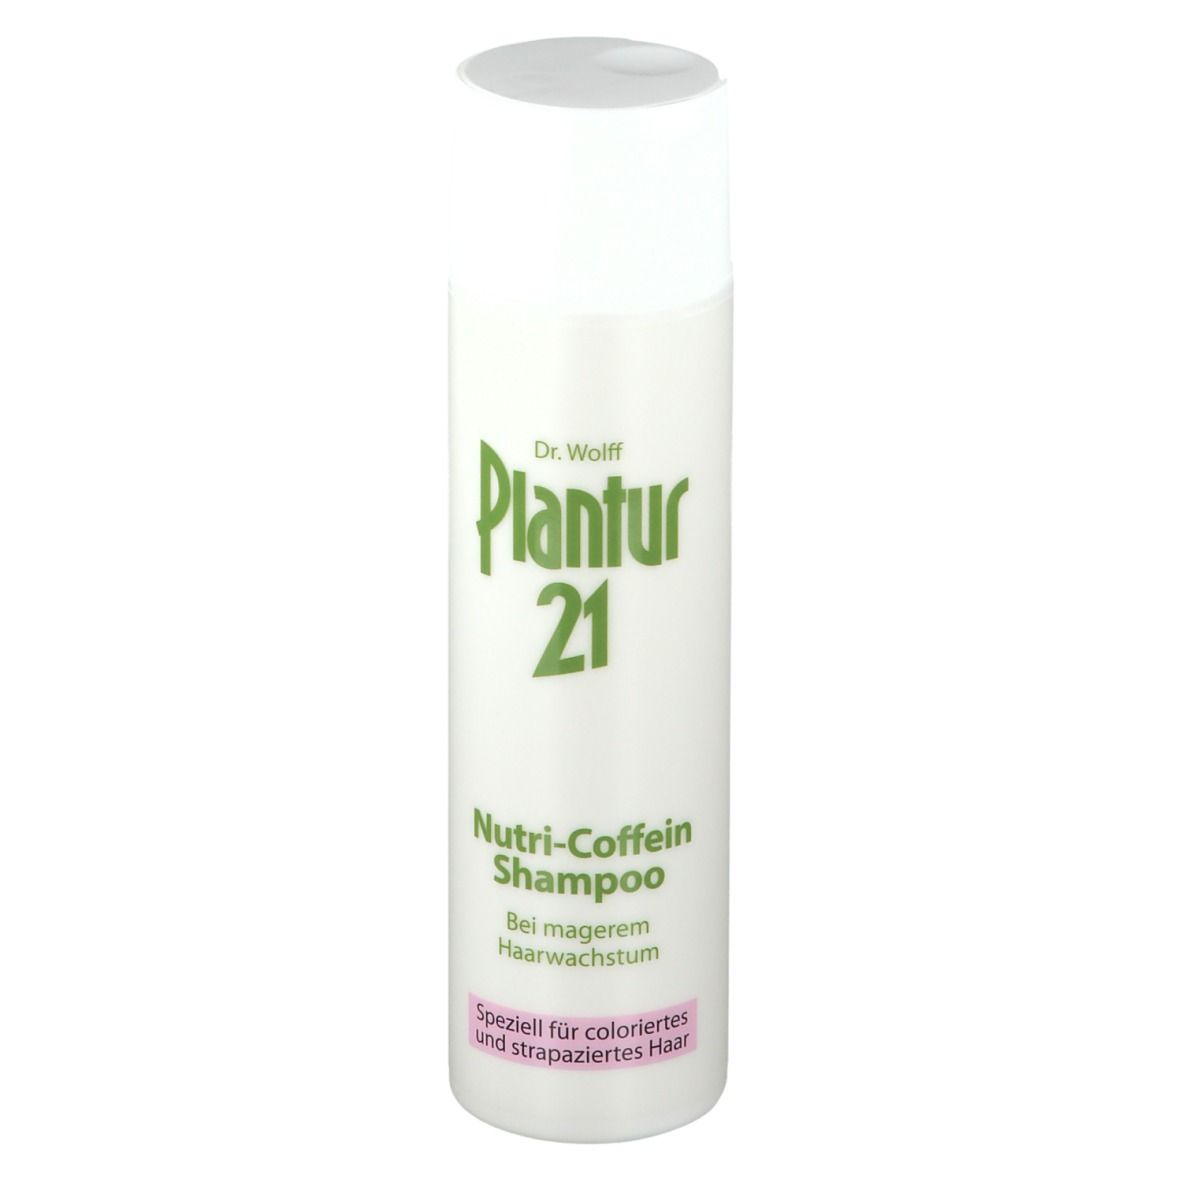 Plantur21 Nutri-Coffein-Shampoo